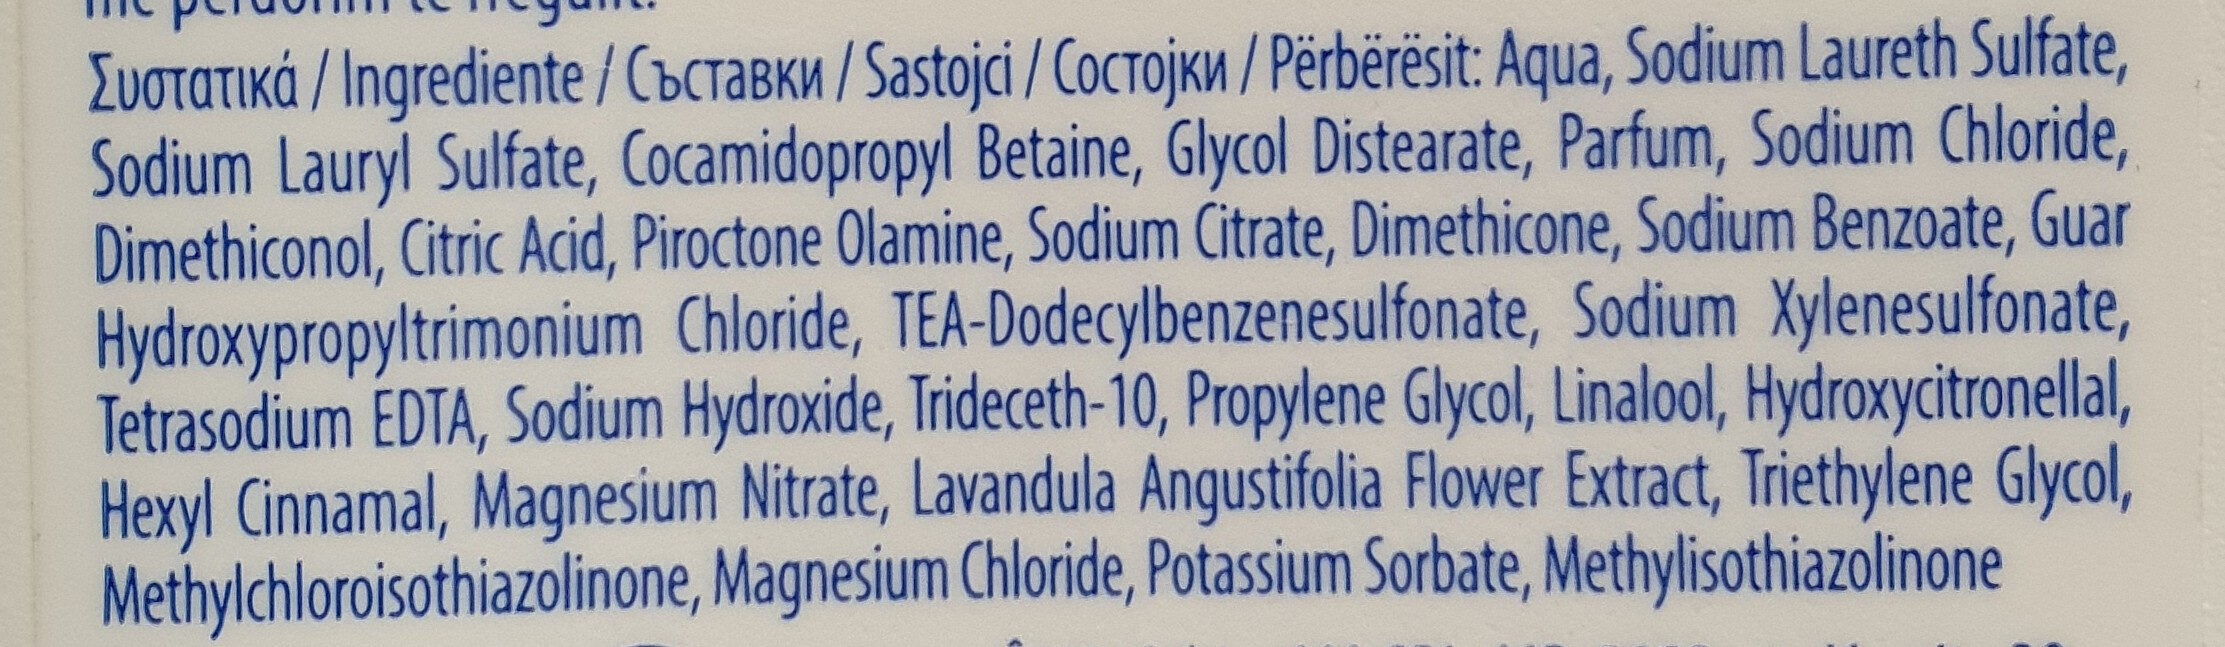 ANTI-DANDRUFF SHAMPOO - Ingredients - en